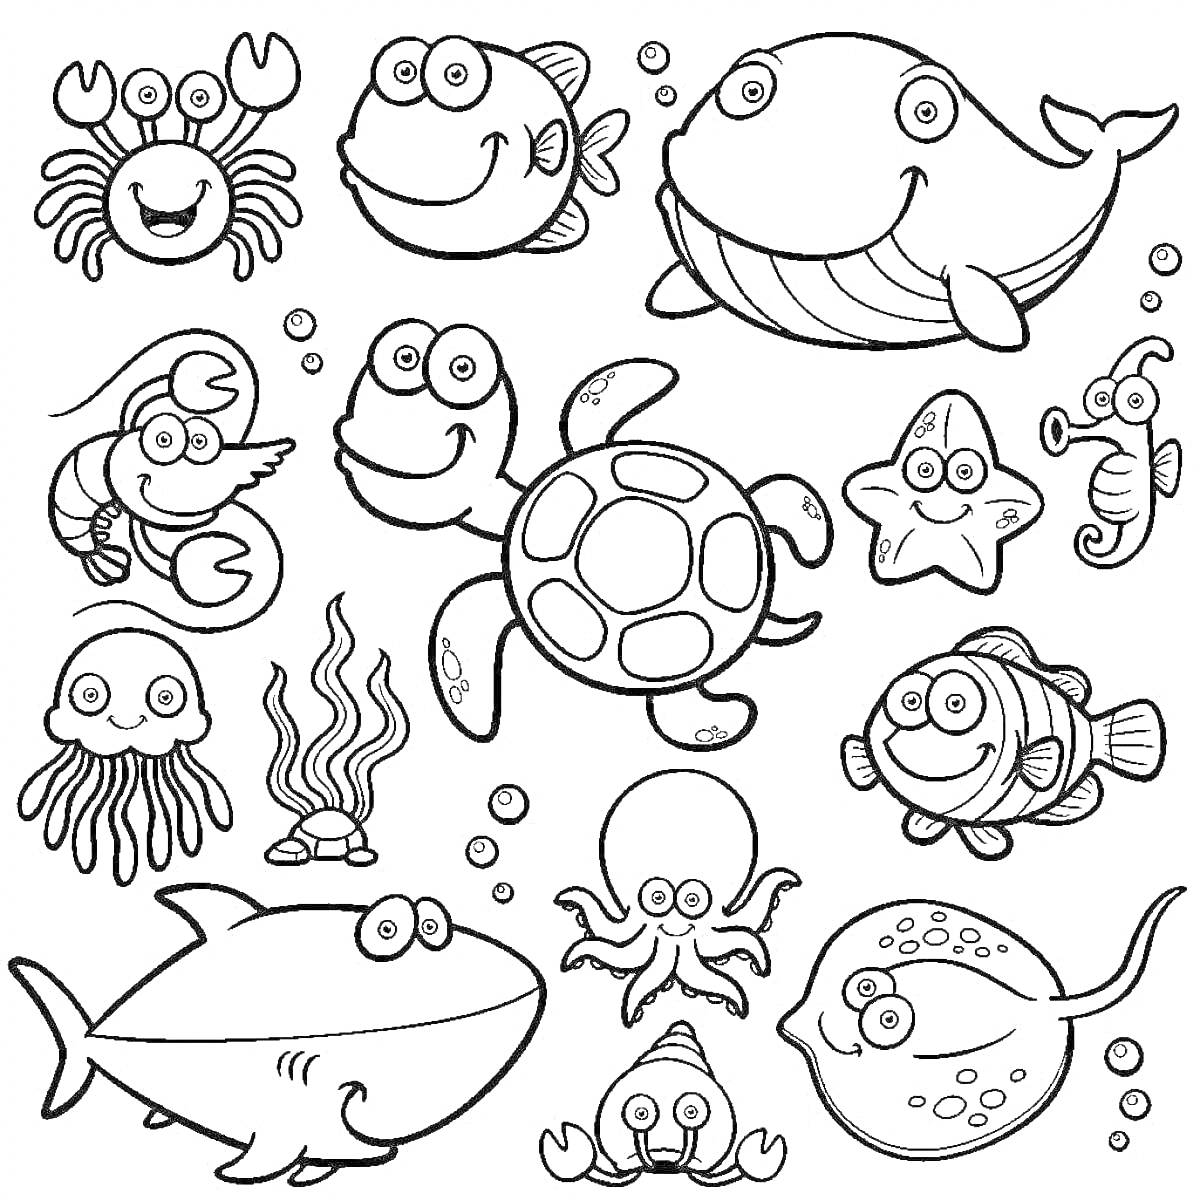 Раскраска Морские животные - краб, рыба, кит, омар, черепаха, морская звезда, морской конек, медуза, водоросли, осьминог, акула, скат, рыба-клоун, улитка